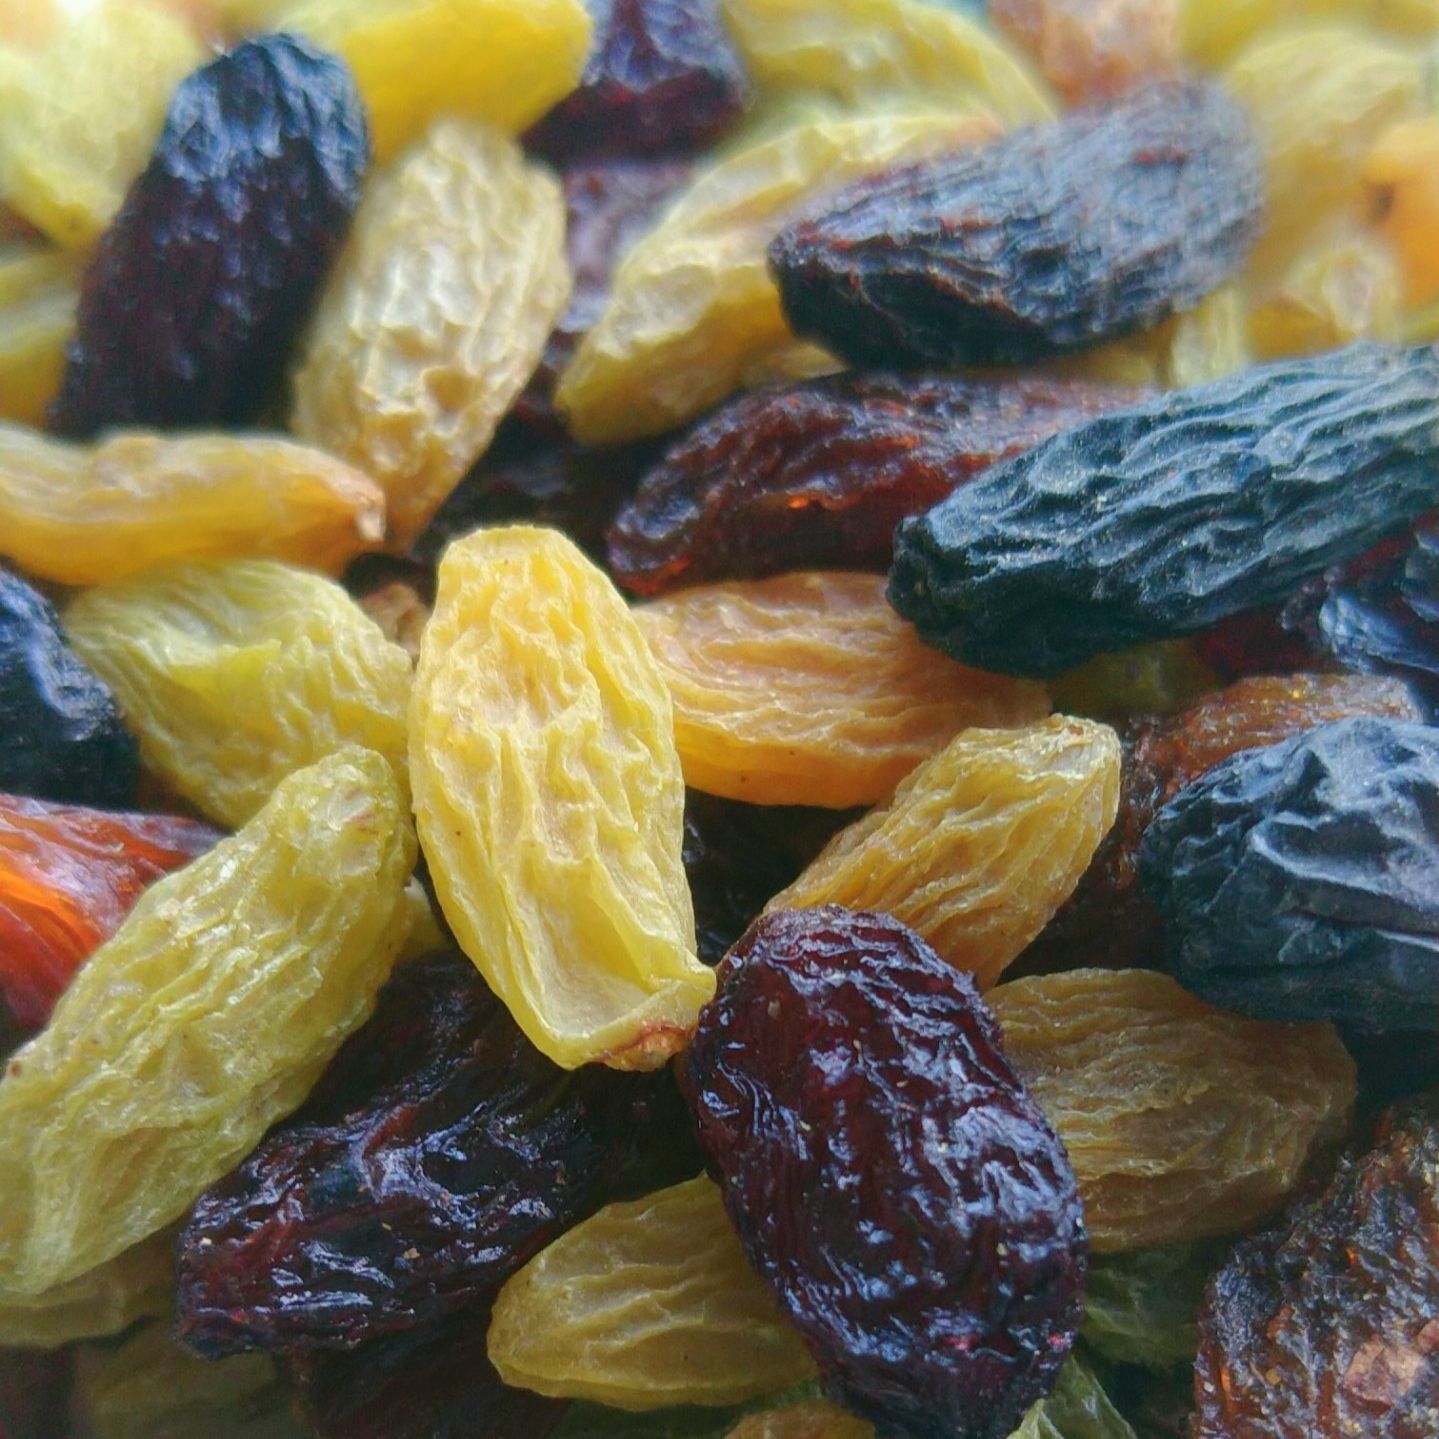 吐鲁番无核葡萄干     新疆吐鲁番四色葡萄干多品种混装精品葡萄干